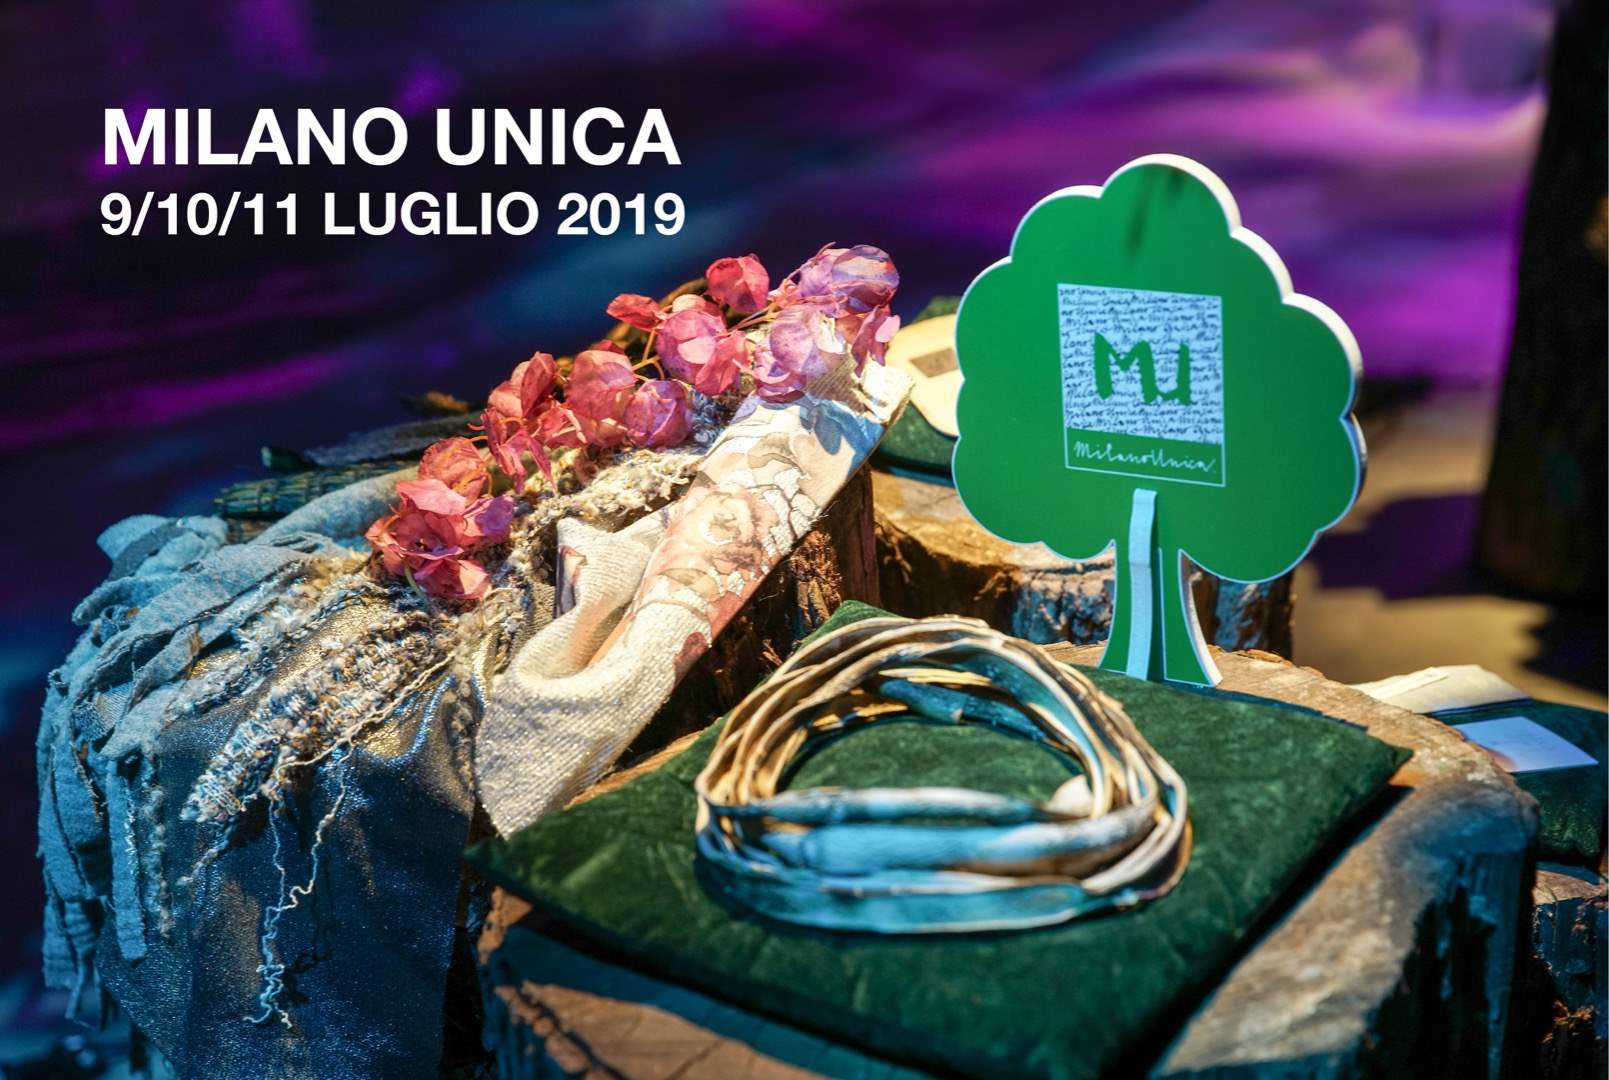 Masca in visita a Milano Unica 2019!!